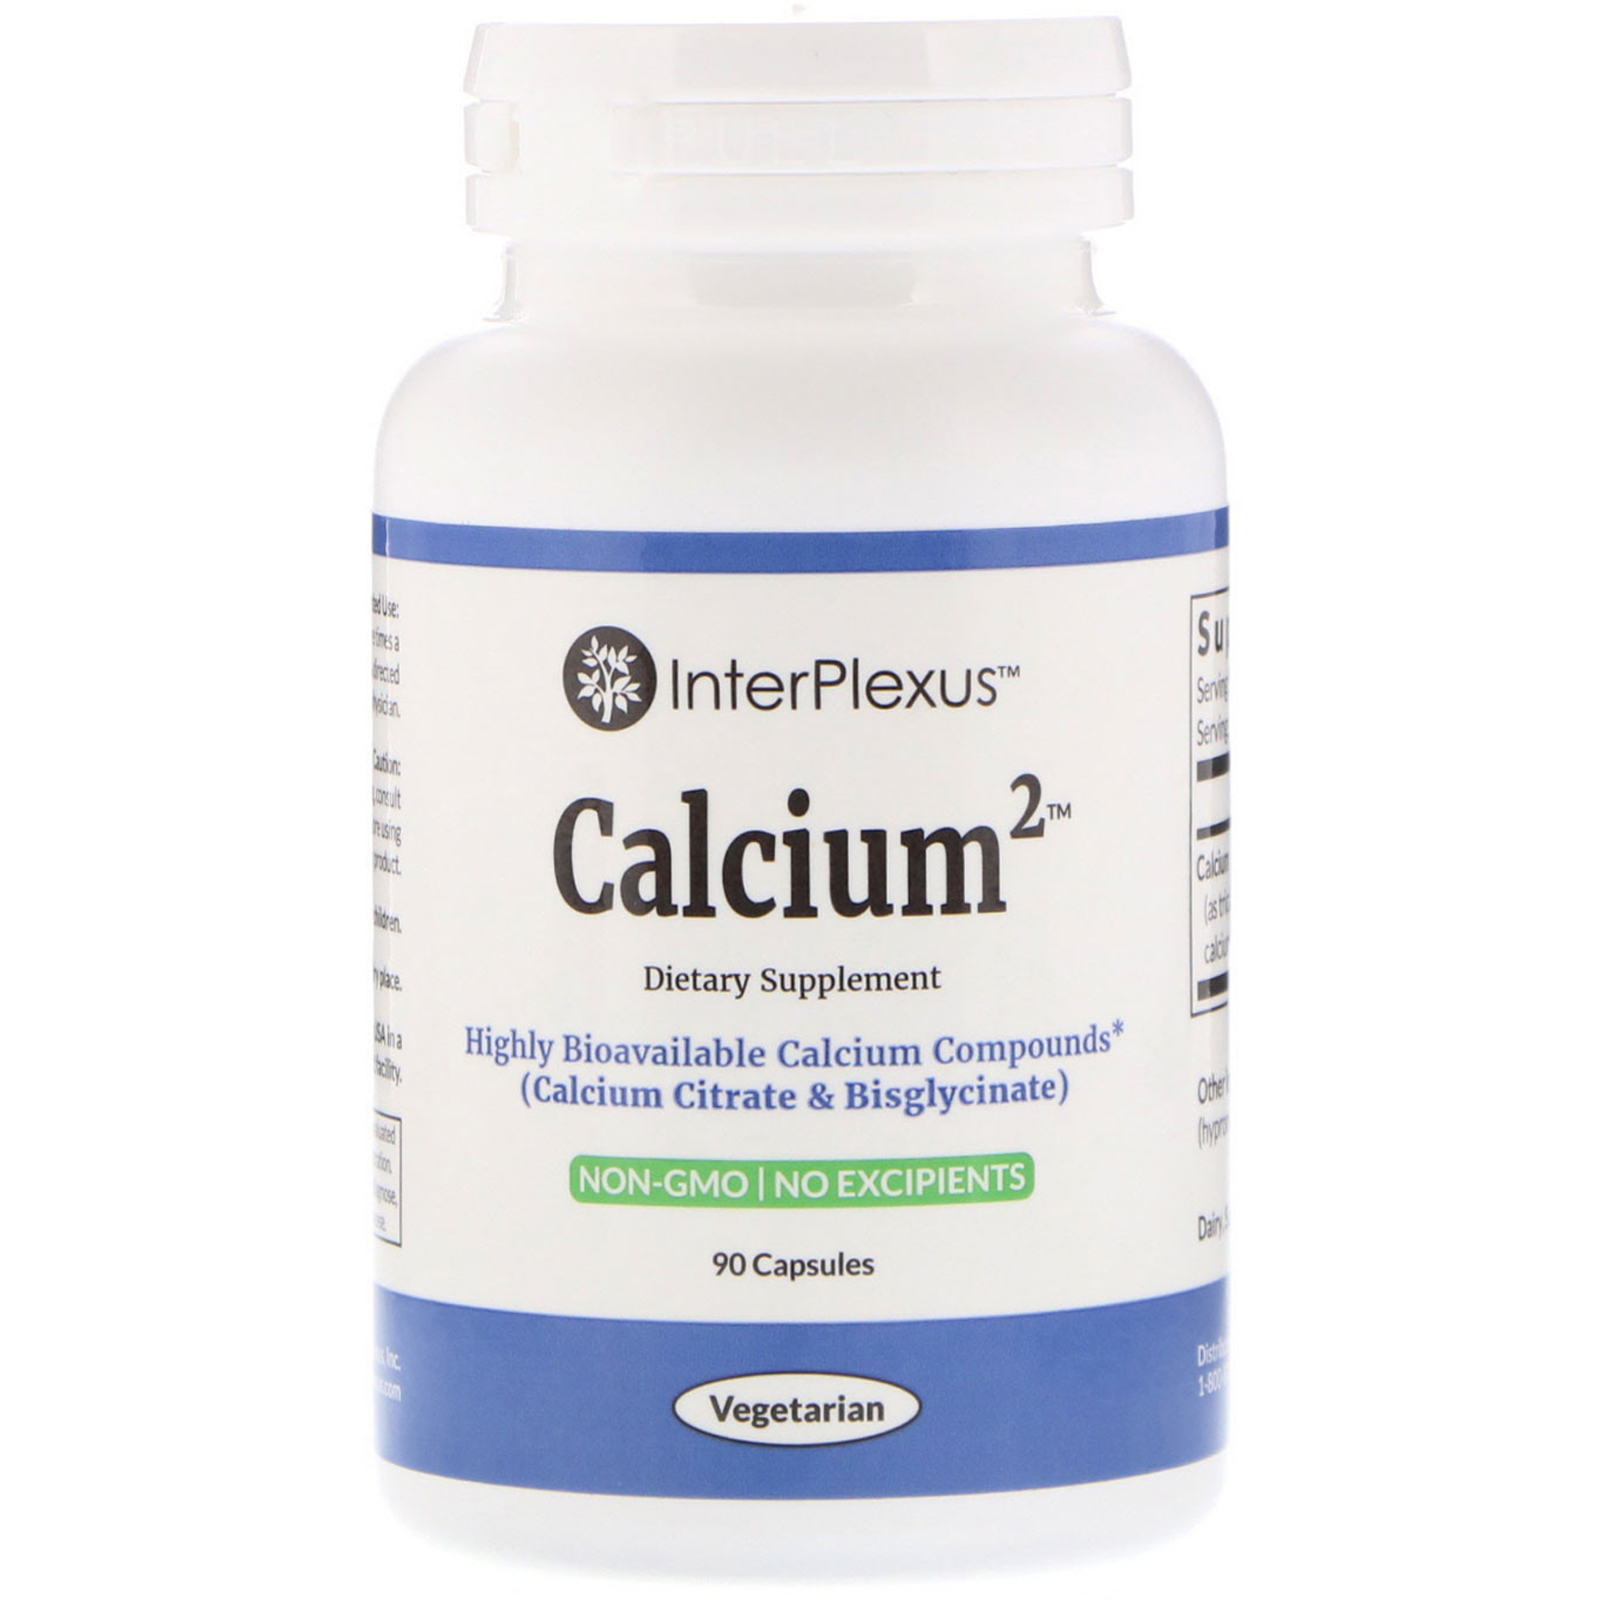 InterPlexus , Calcium2, 90 Capsules - iHerb